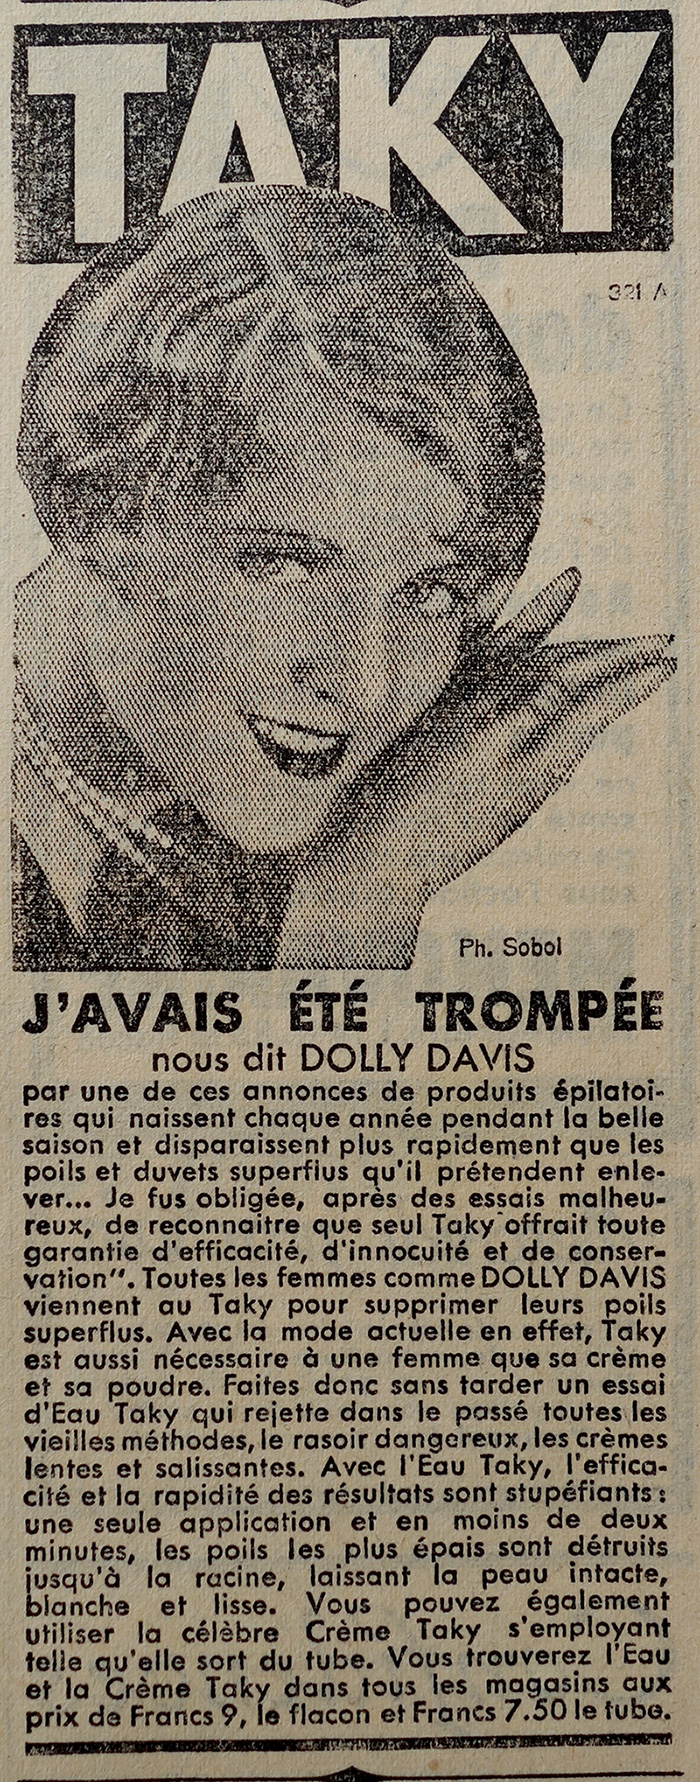 taki-publicite-journal-le-petit-parisien-1936-site-photogriffon.jpg